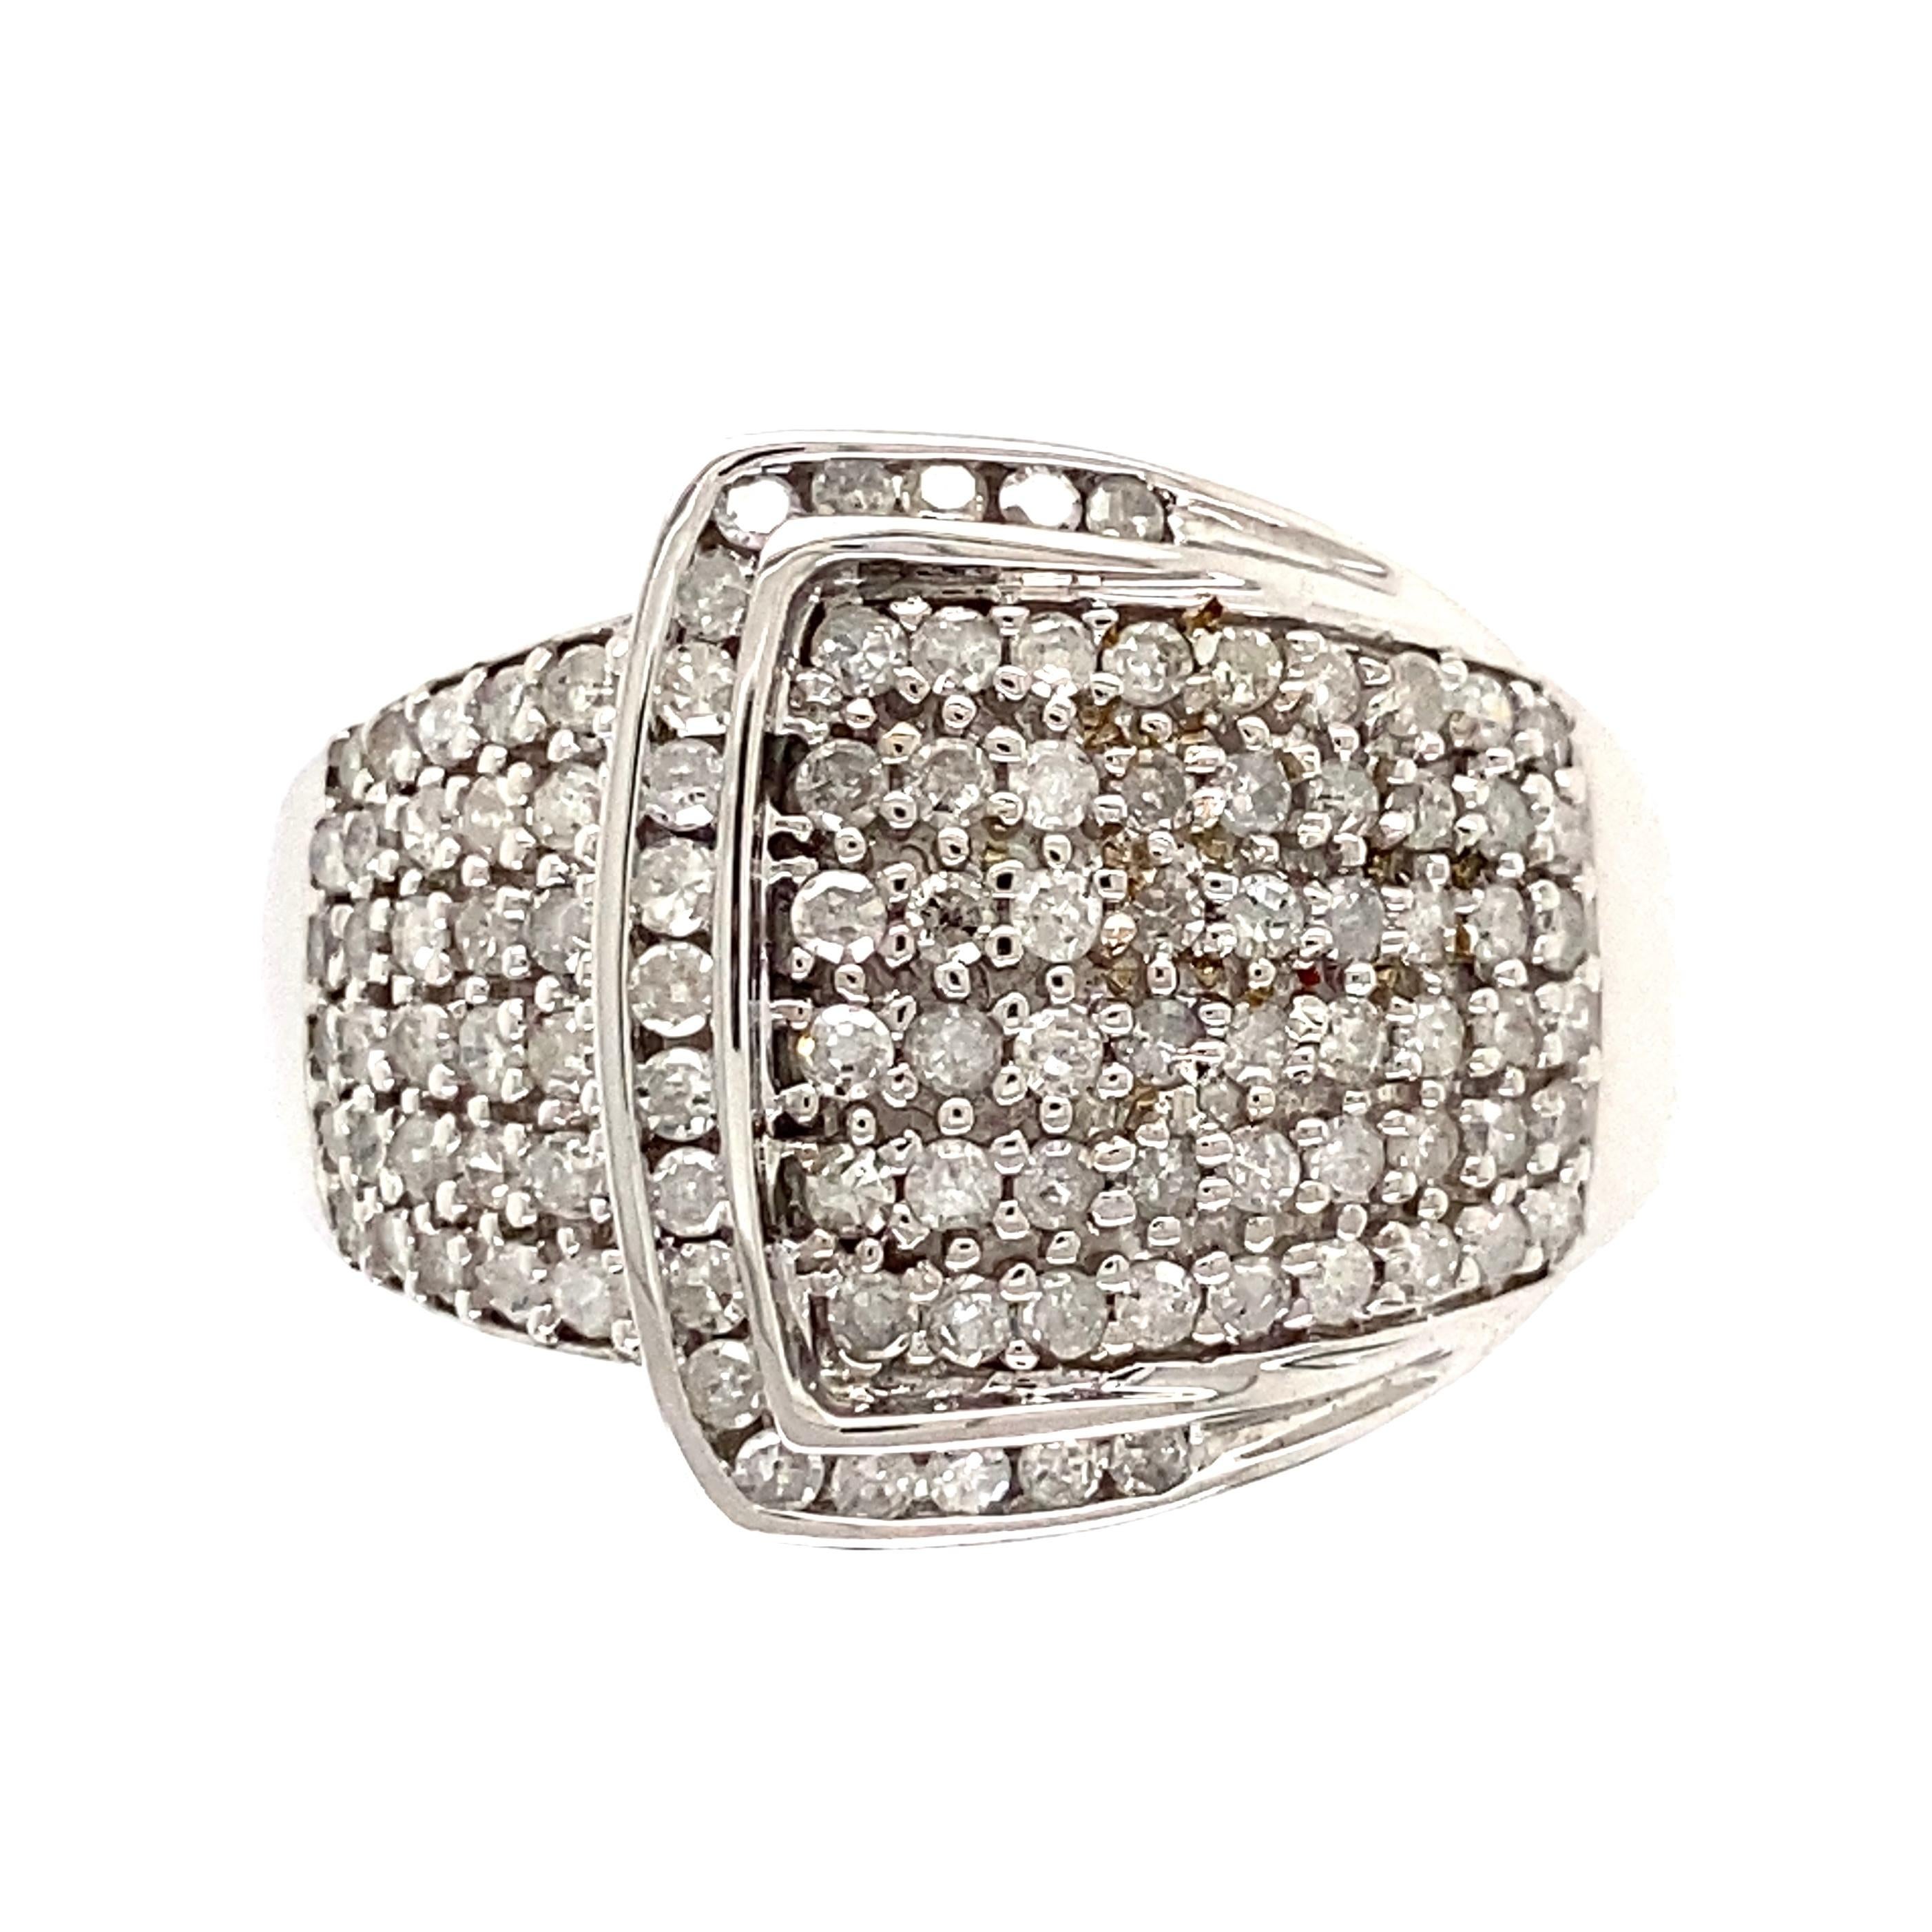 Awesome Diamond Buckle Gold Ring. Pave Hand mit Diamanten besetzt, mit einem Gewicht von ca. 1,70 tcw. Handgefertigte Fassung aus 14K Weißgold. Ringgröße 10,25, wir bieten Ringgröße ändern. More Beautiful in real time...Ein Stück, das Sie immer